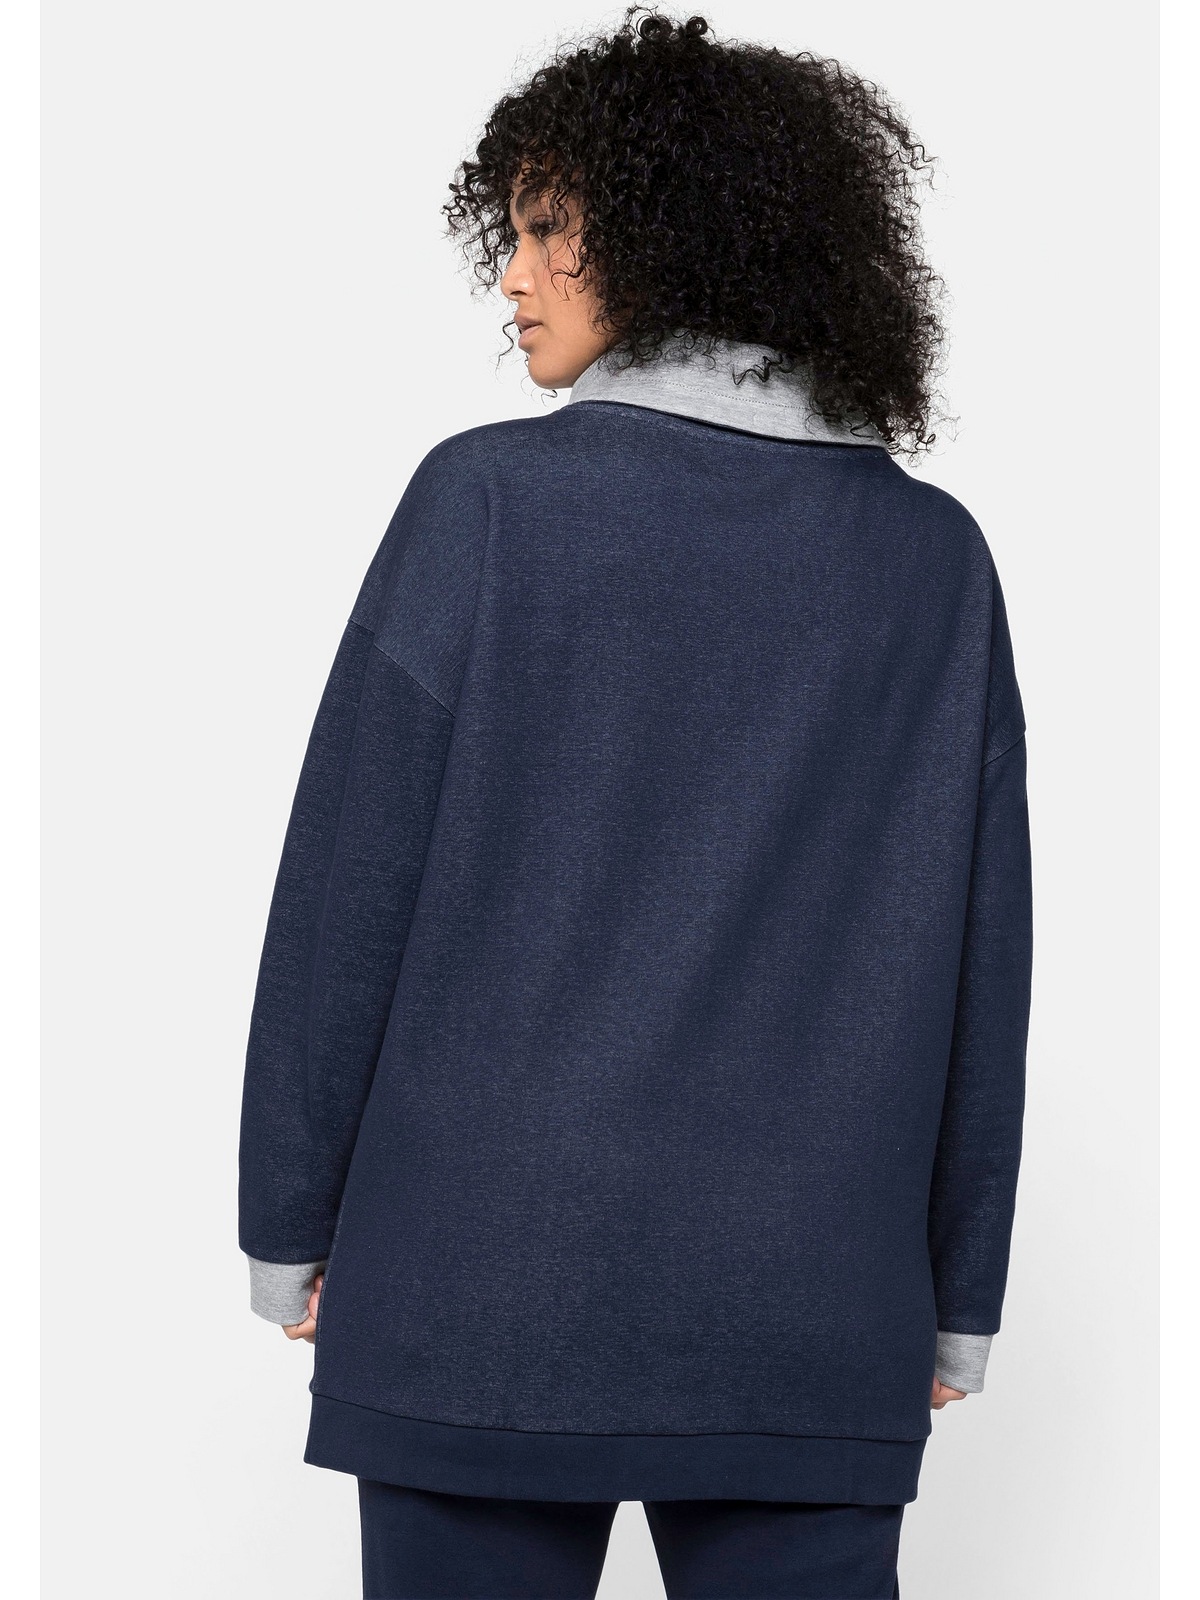 Kontrastdetails mit Sweatshirt Große Sheego weitem Kragen und Größen